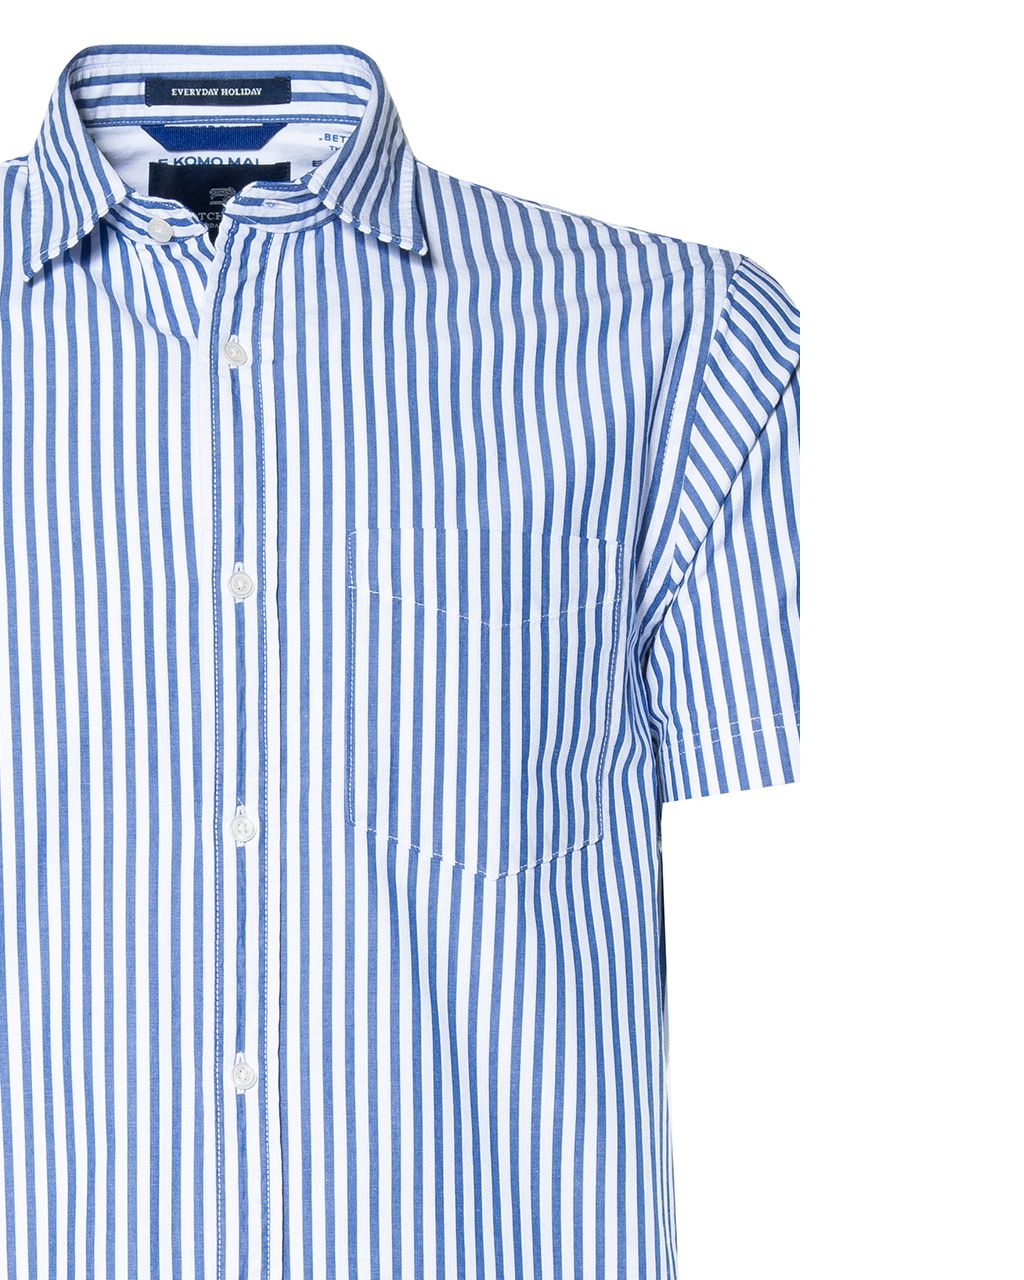 Scotch & Soda Casual Overhemd KM Blauw streep 061230-001-L